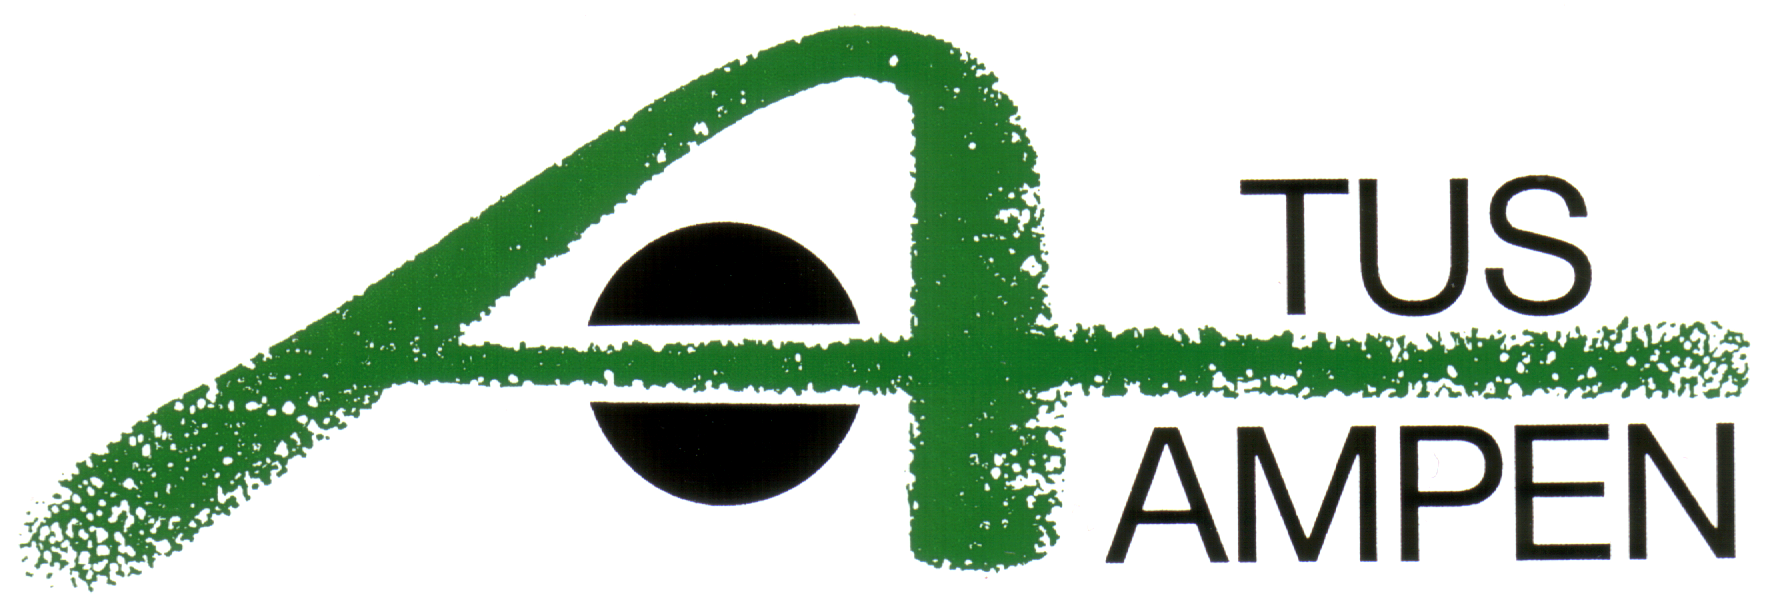 TuS Ampen logo